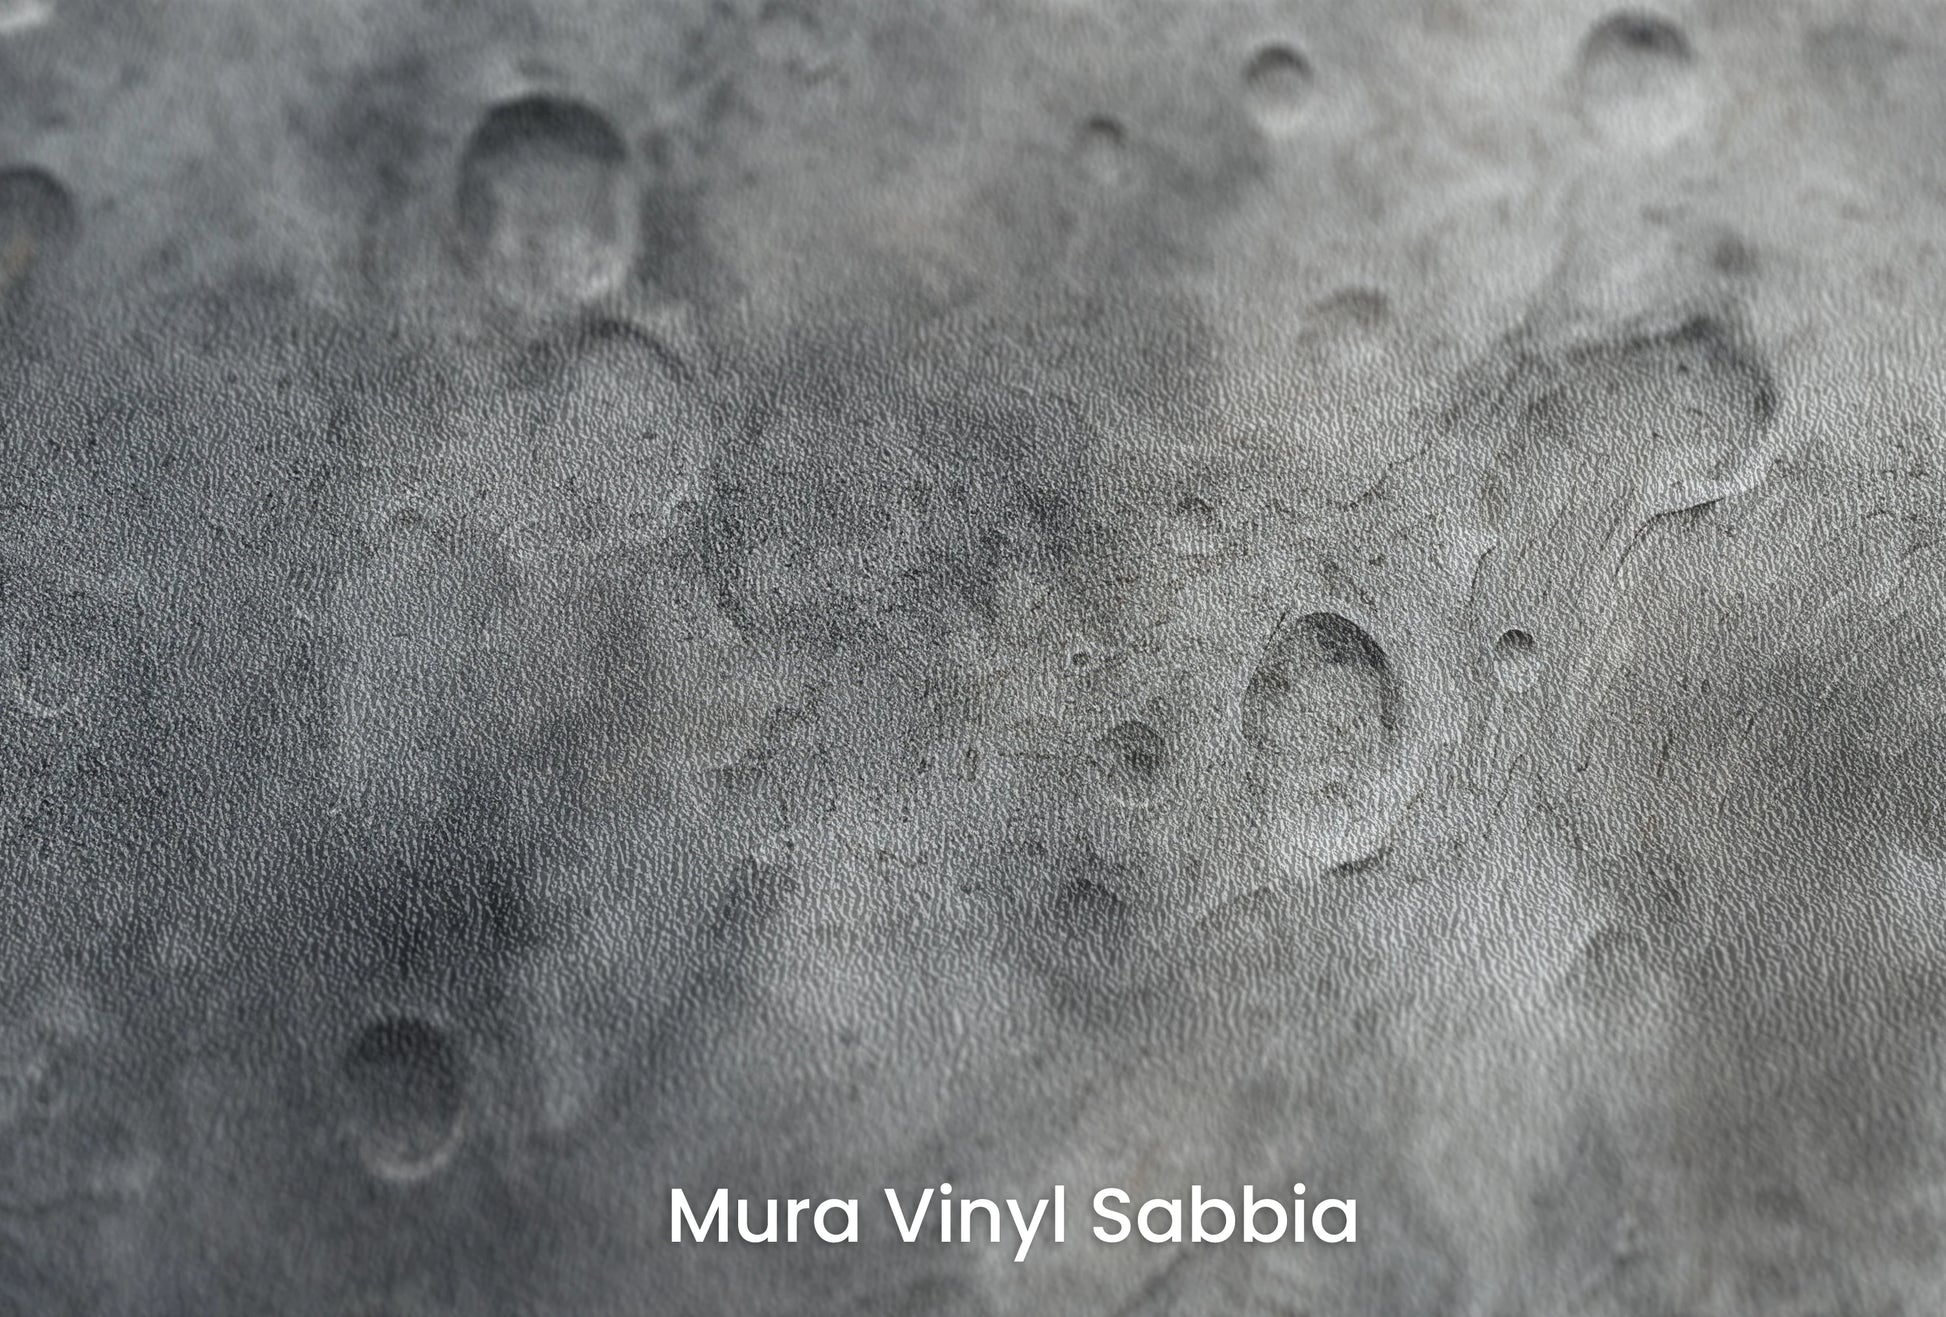 Zbliżenie na artystyczną fototapetę o nazwie Lunar Desert na podłożu Mura Vinyl Sabbia struktura grubego ziarna piasku.